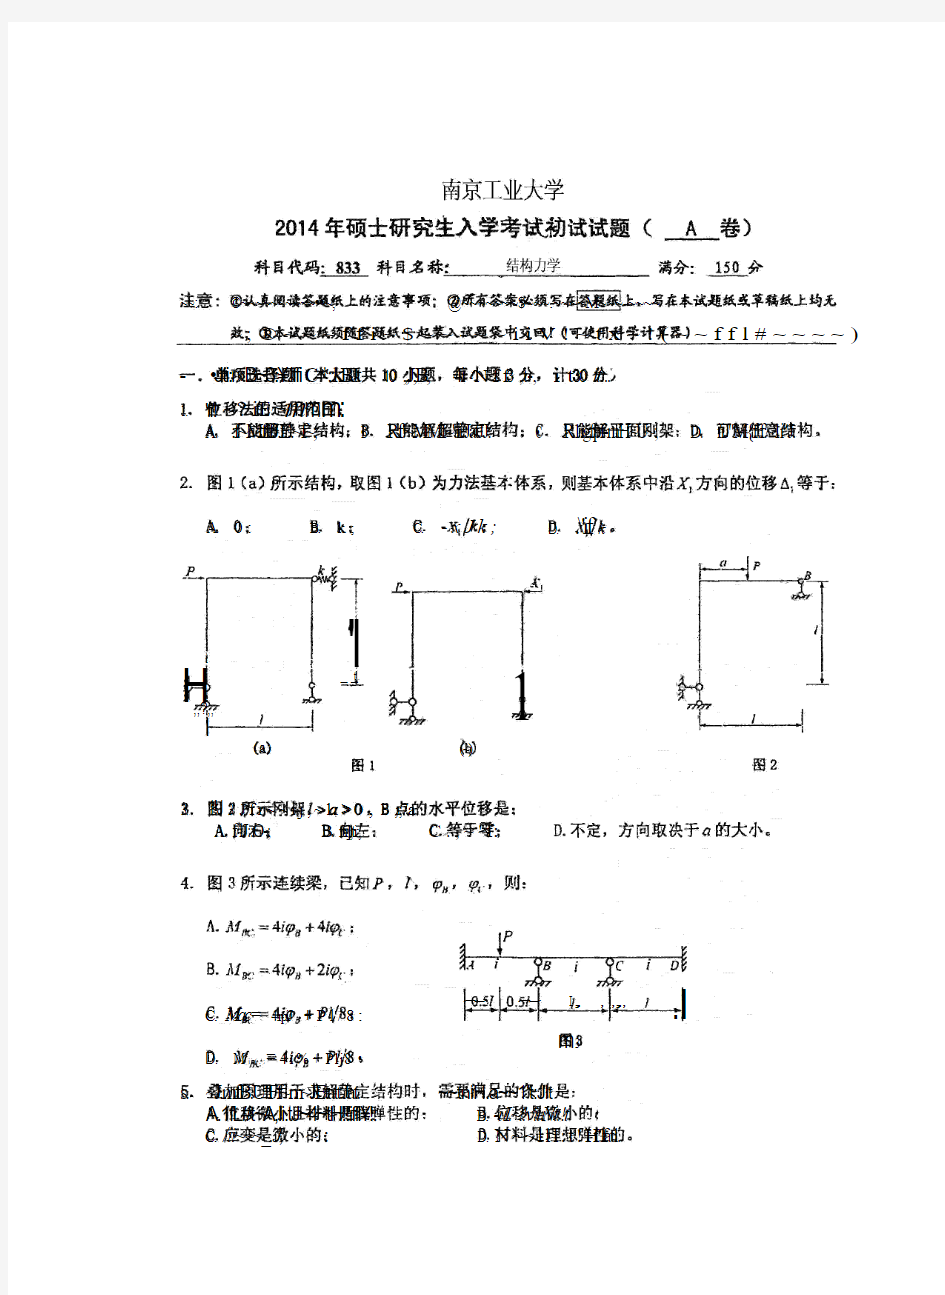 南京工业大学2014-2019年《833结构力学》考研真题